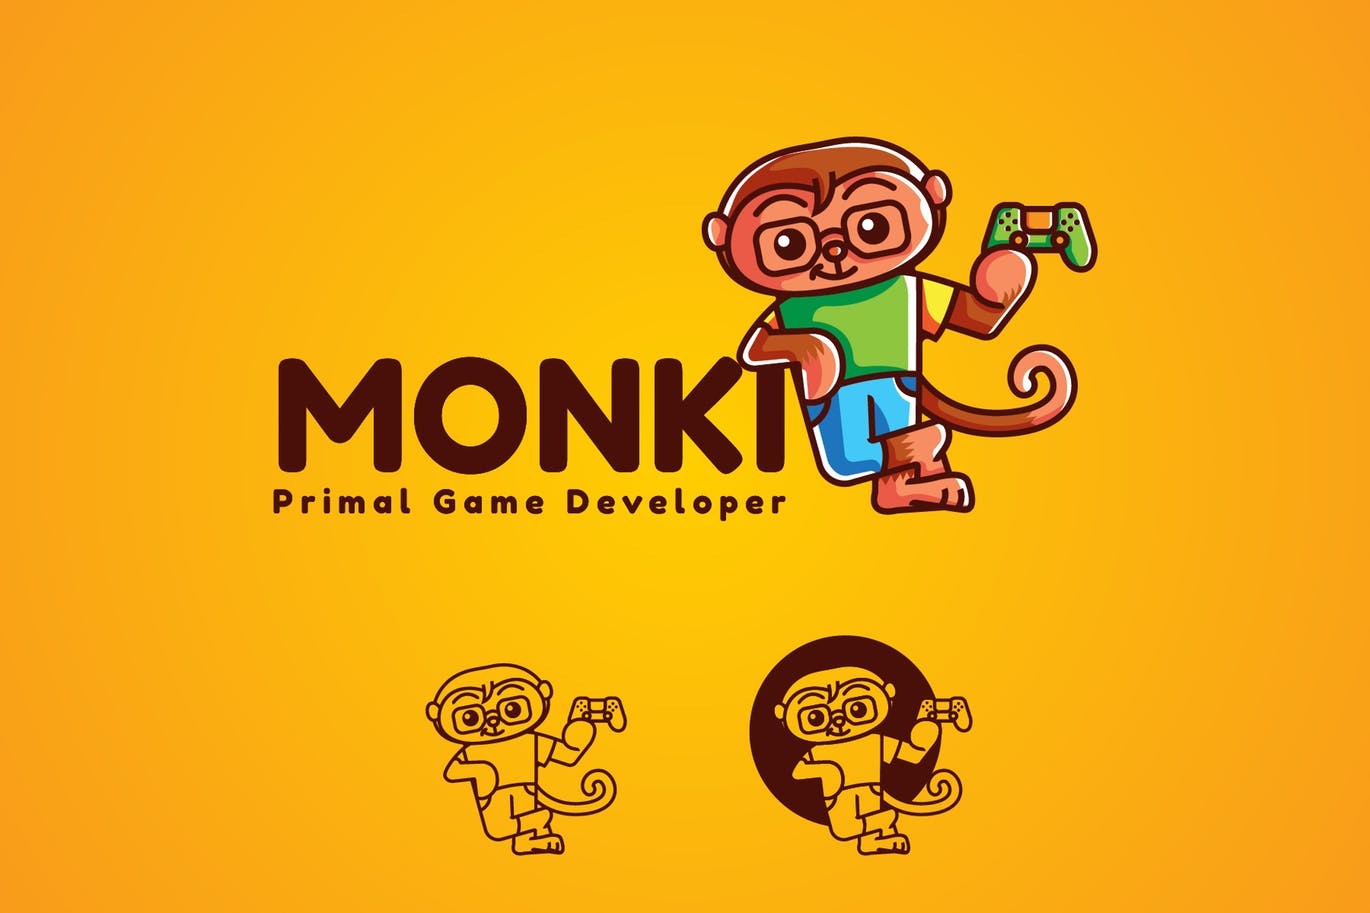 玩具猴卡通形象IT开发服务商Logo设计第一素材精选模板 Monki Gaming Mascot Logo插图